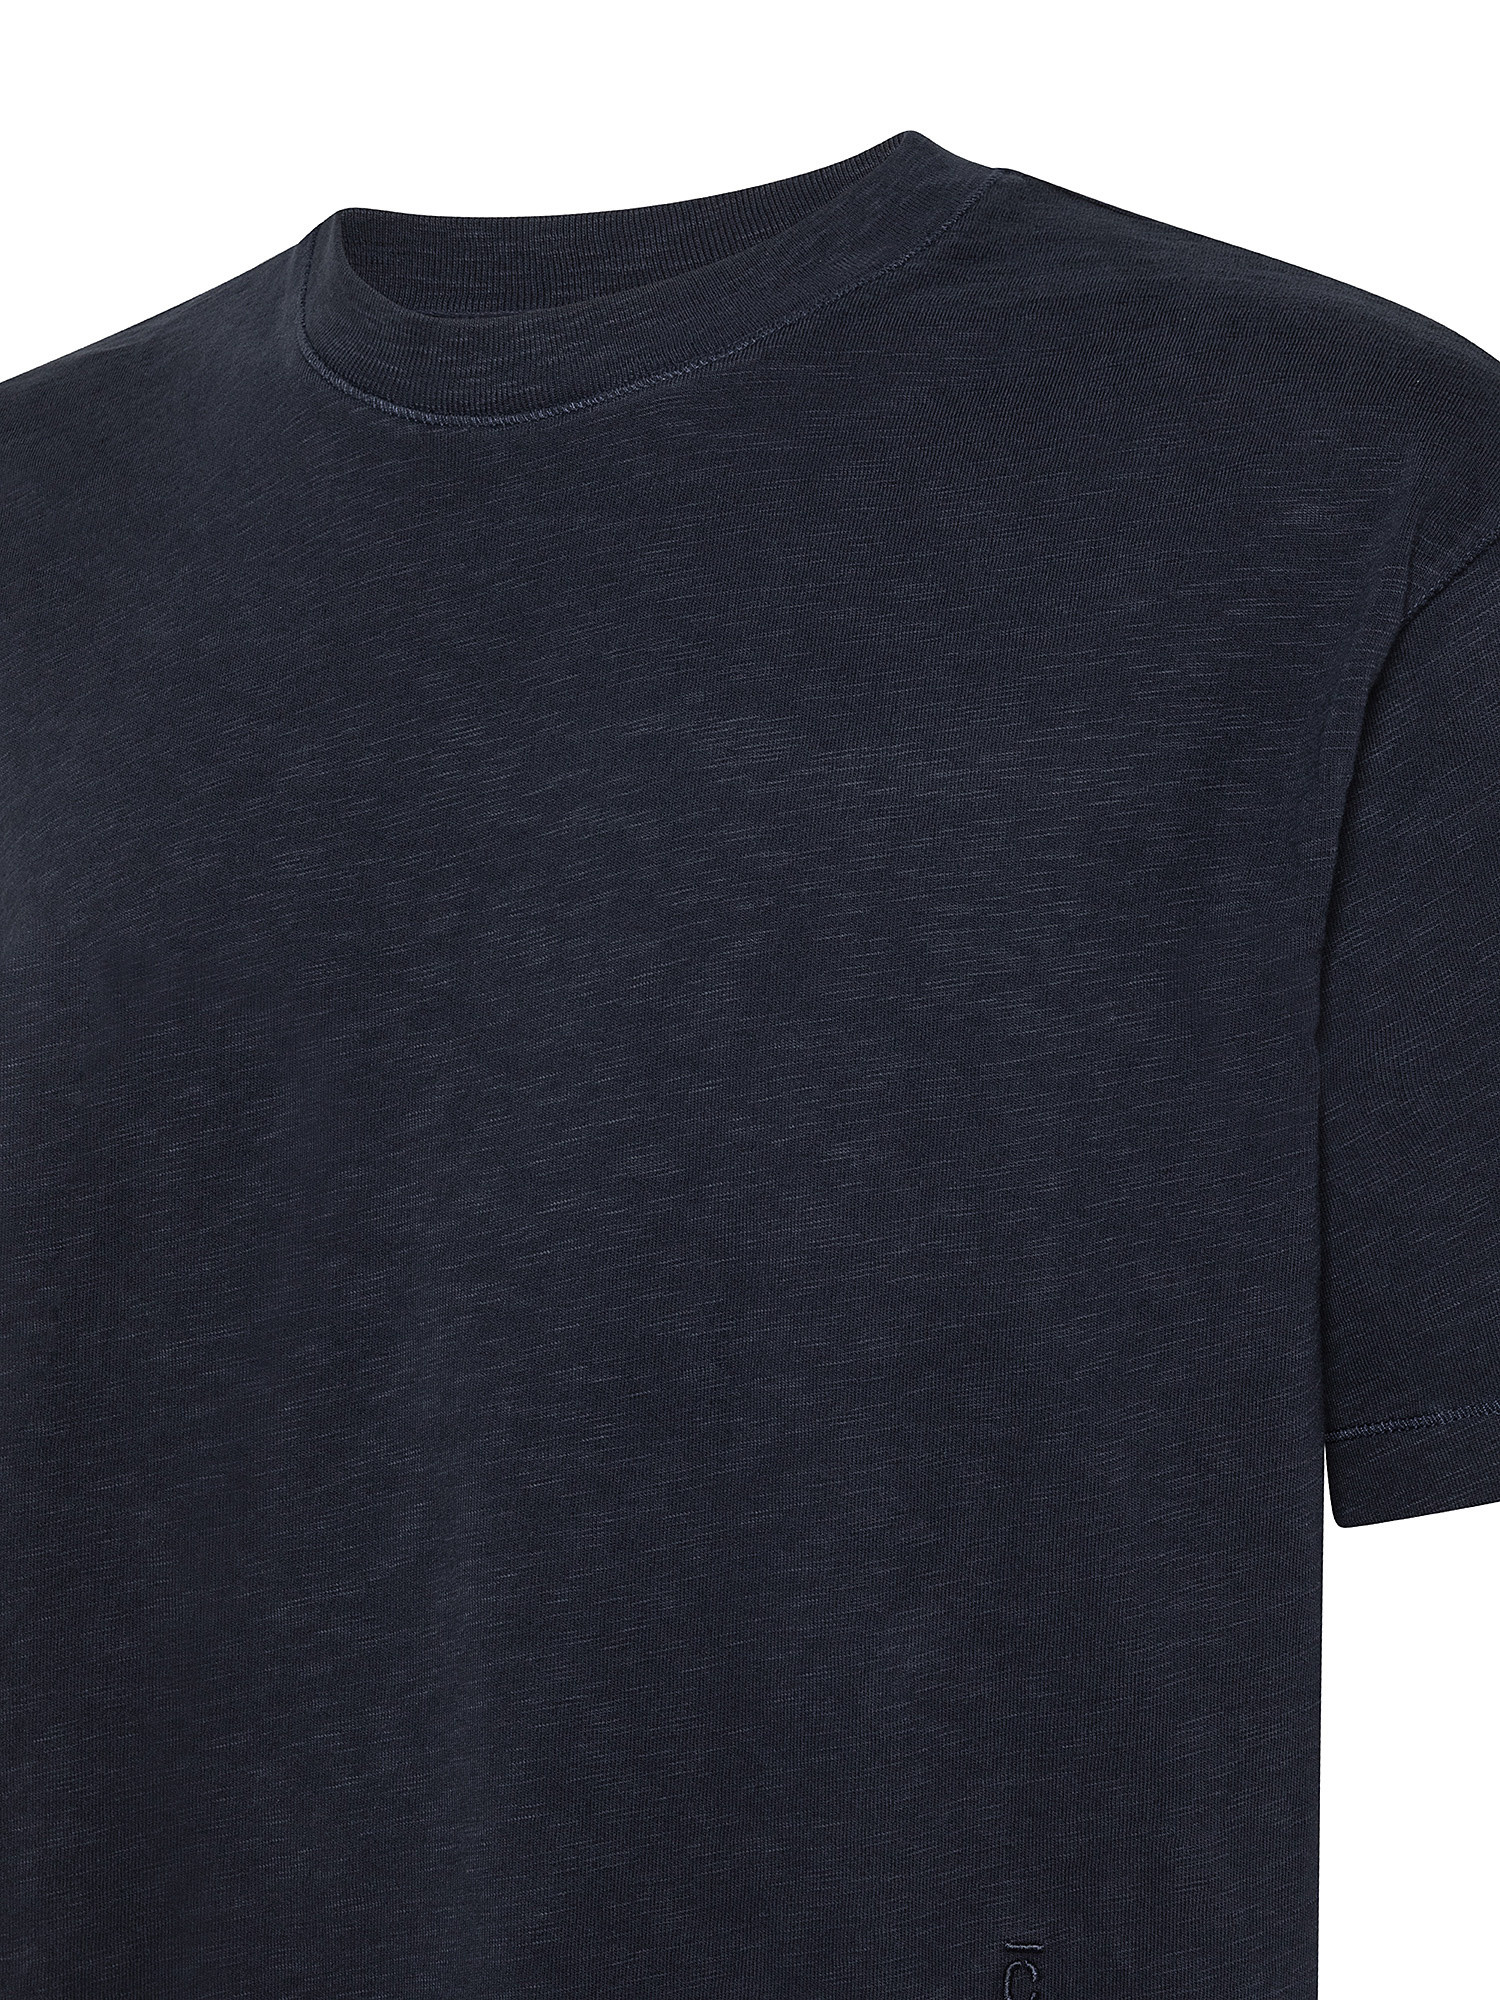 T-Shirt morbida, Blu scuro, large image number 2